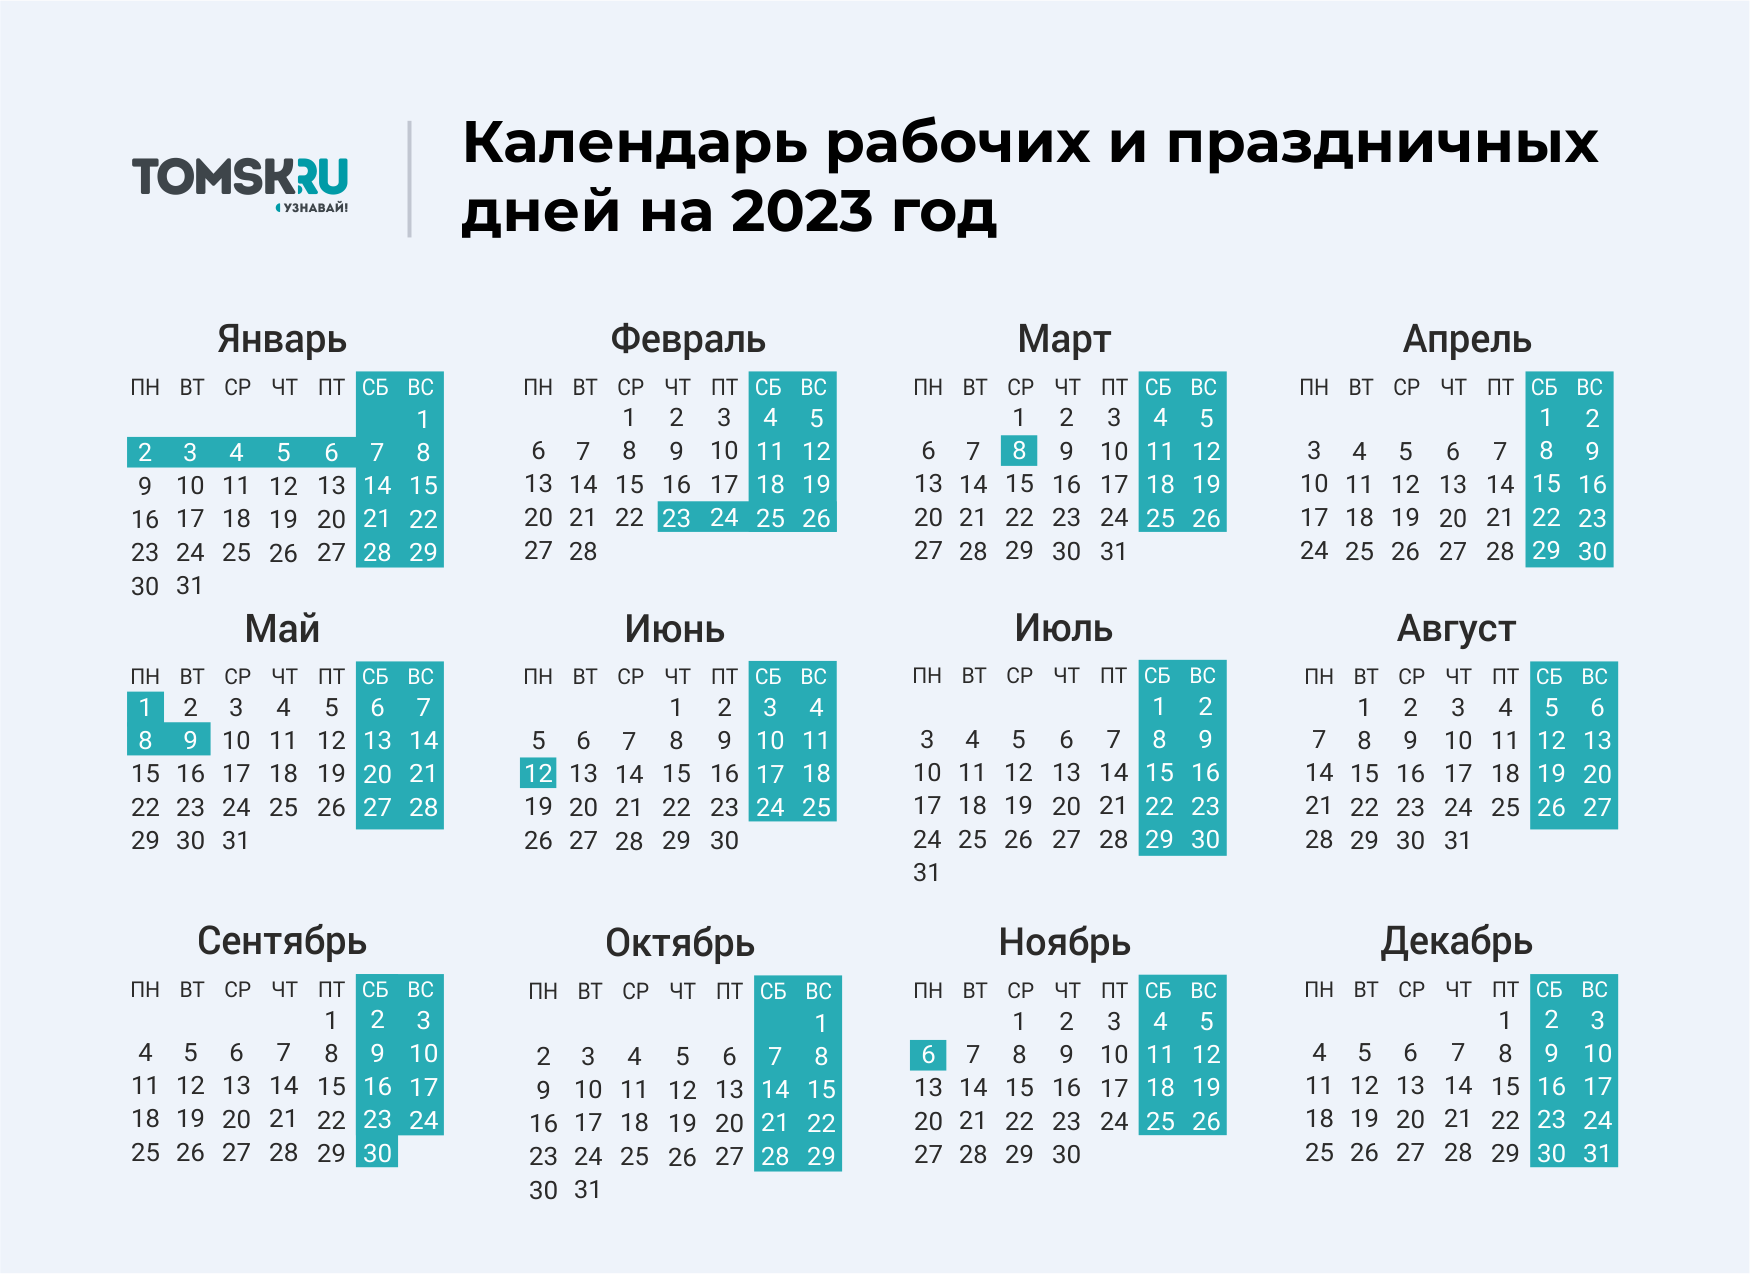 Календарь апрель 2024г с праздниками и выходными. Выходные дни в 2023 году в России календарь. Календарь выходных и праздничных дней на 2023 год в России. Календарь праздничных выходеыхв 2023 году. Календарь на 2023 год с праздниками и выходными выходные снизу.